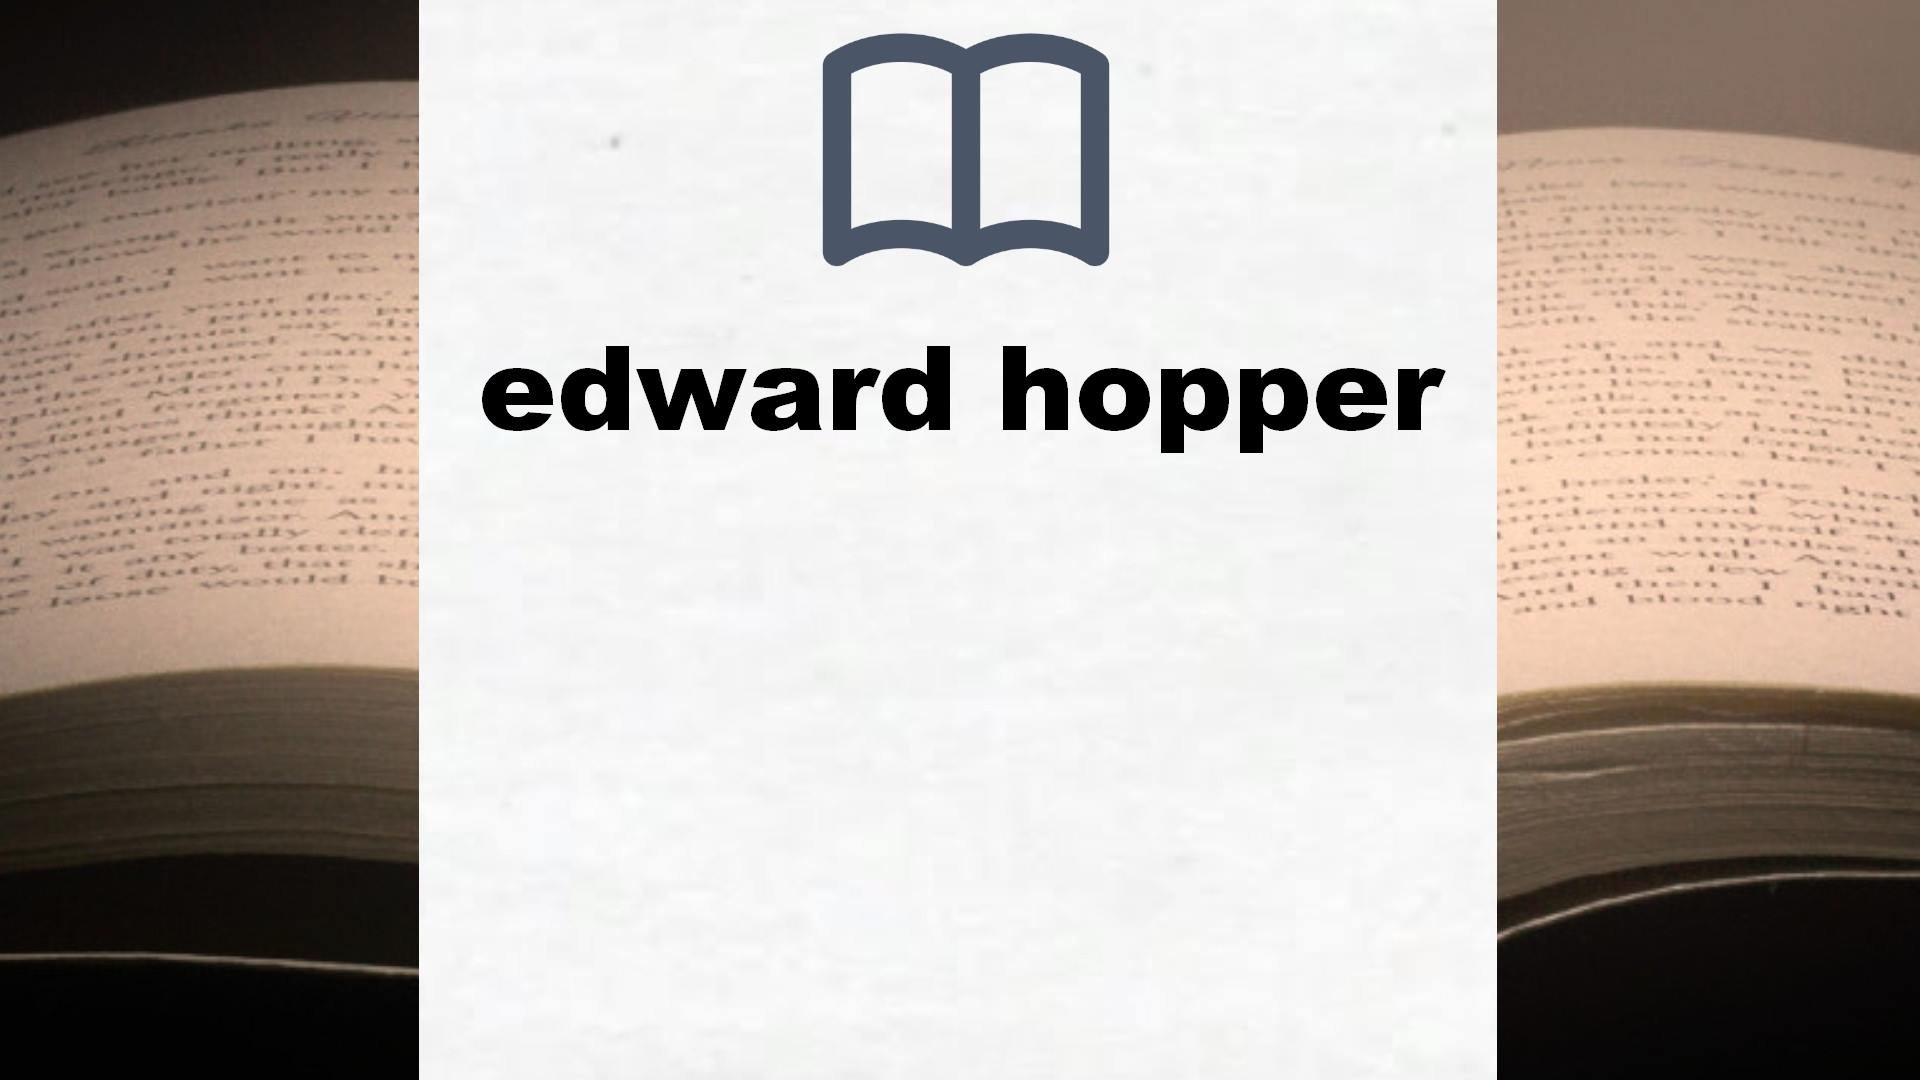 Libros sobre edward hopper